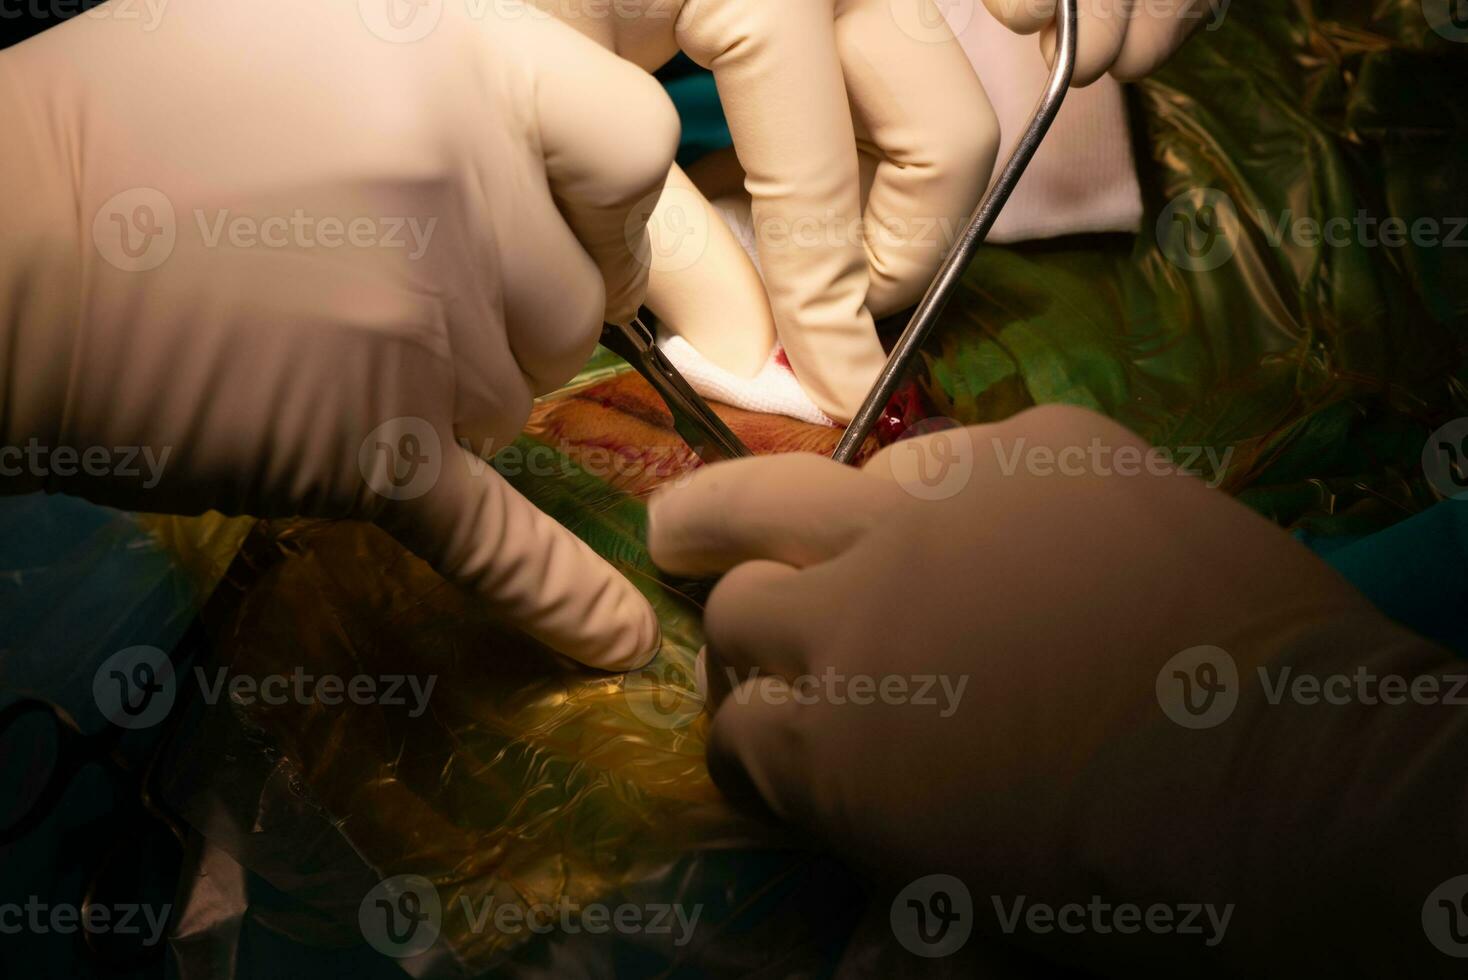 dokter hand- het uitvoeren van insnijding gedurende chirurgie foto